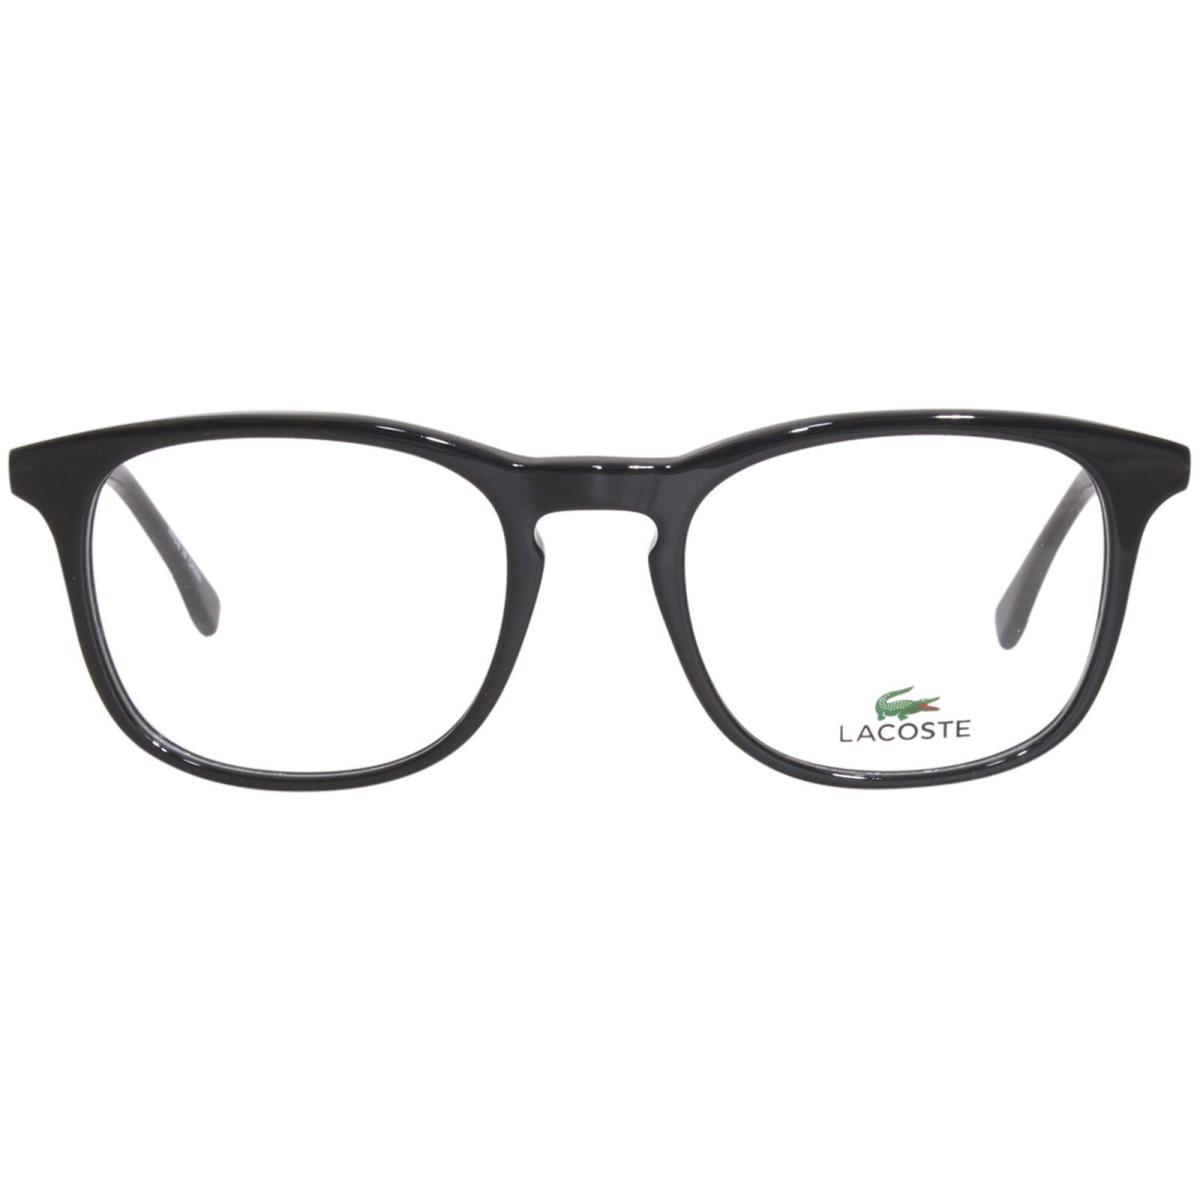 Lacoste L2889 001 Eyeglasses Frame Men`s Black Full Rim Rectangle Shape 52mm